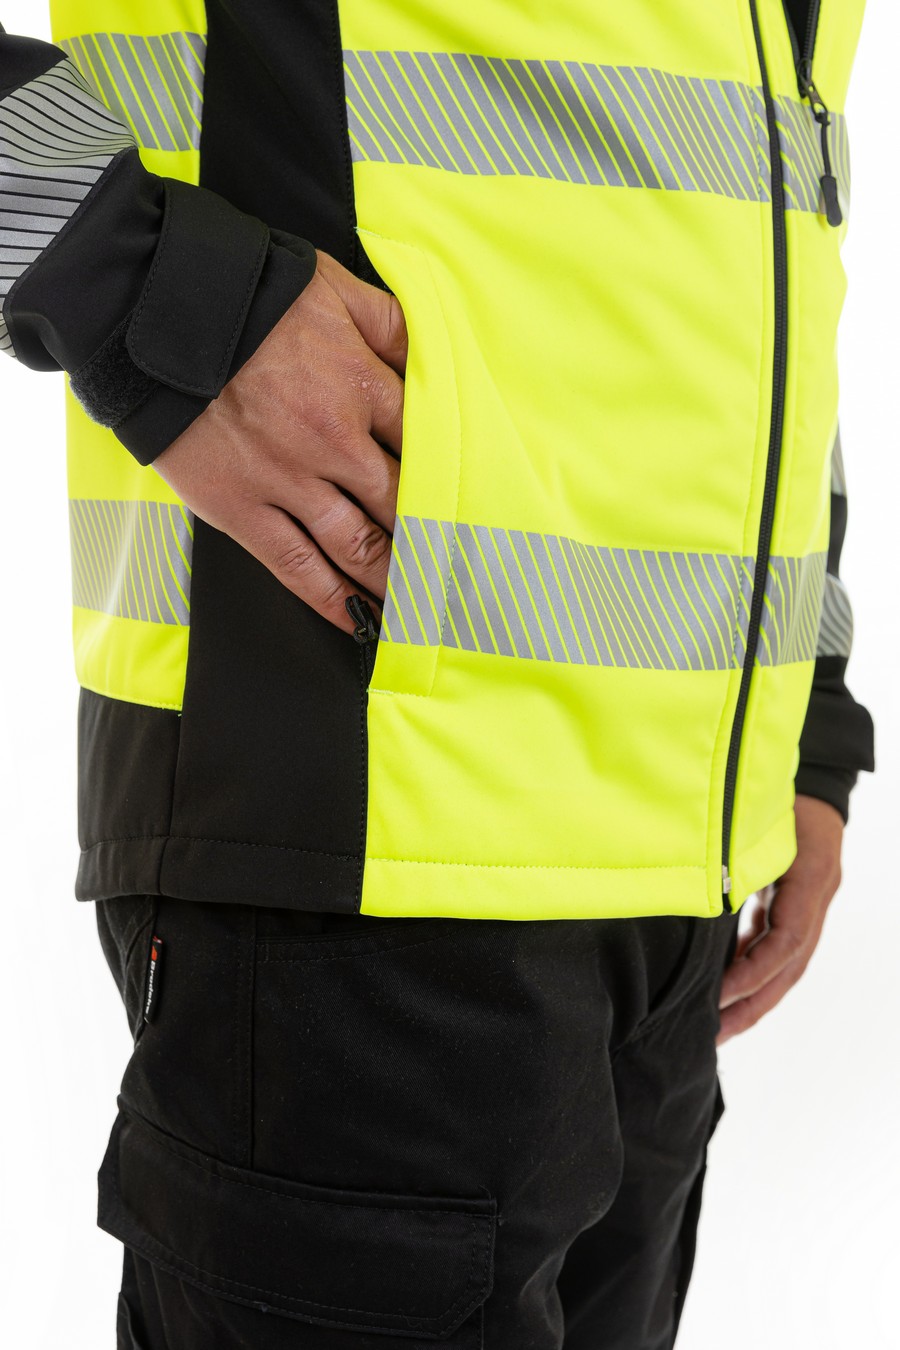 Сигнальная куртка-софтшелл BRODEKS KS227, желтый/черный